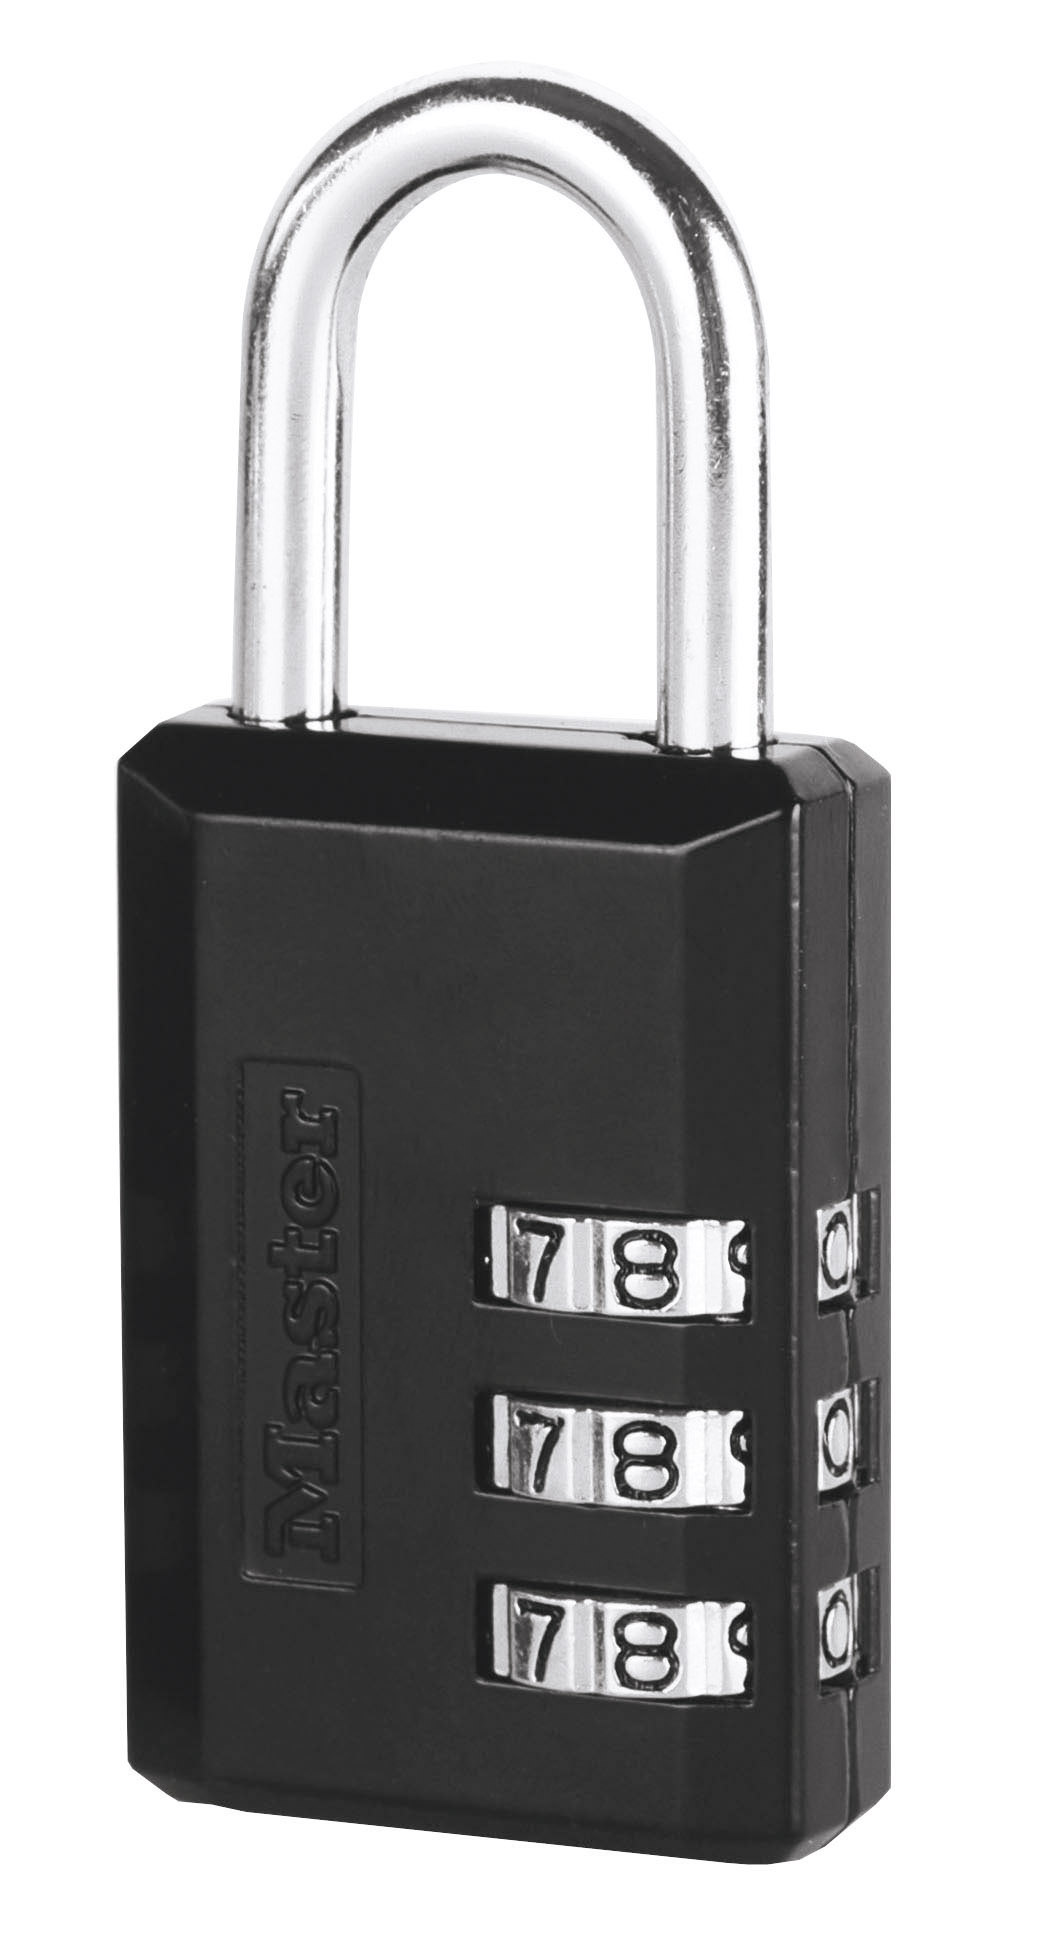 Modele N 647eurd Master Lock